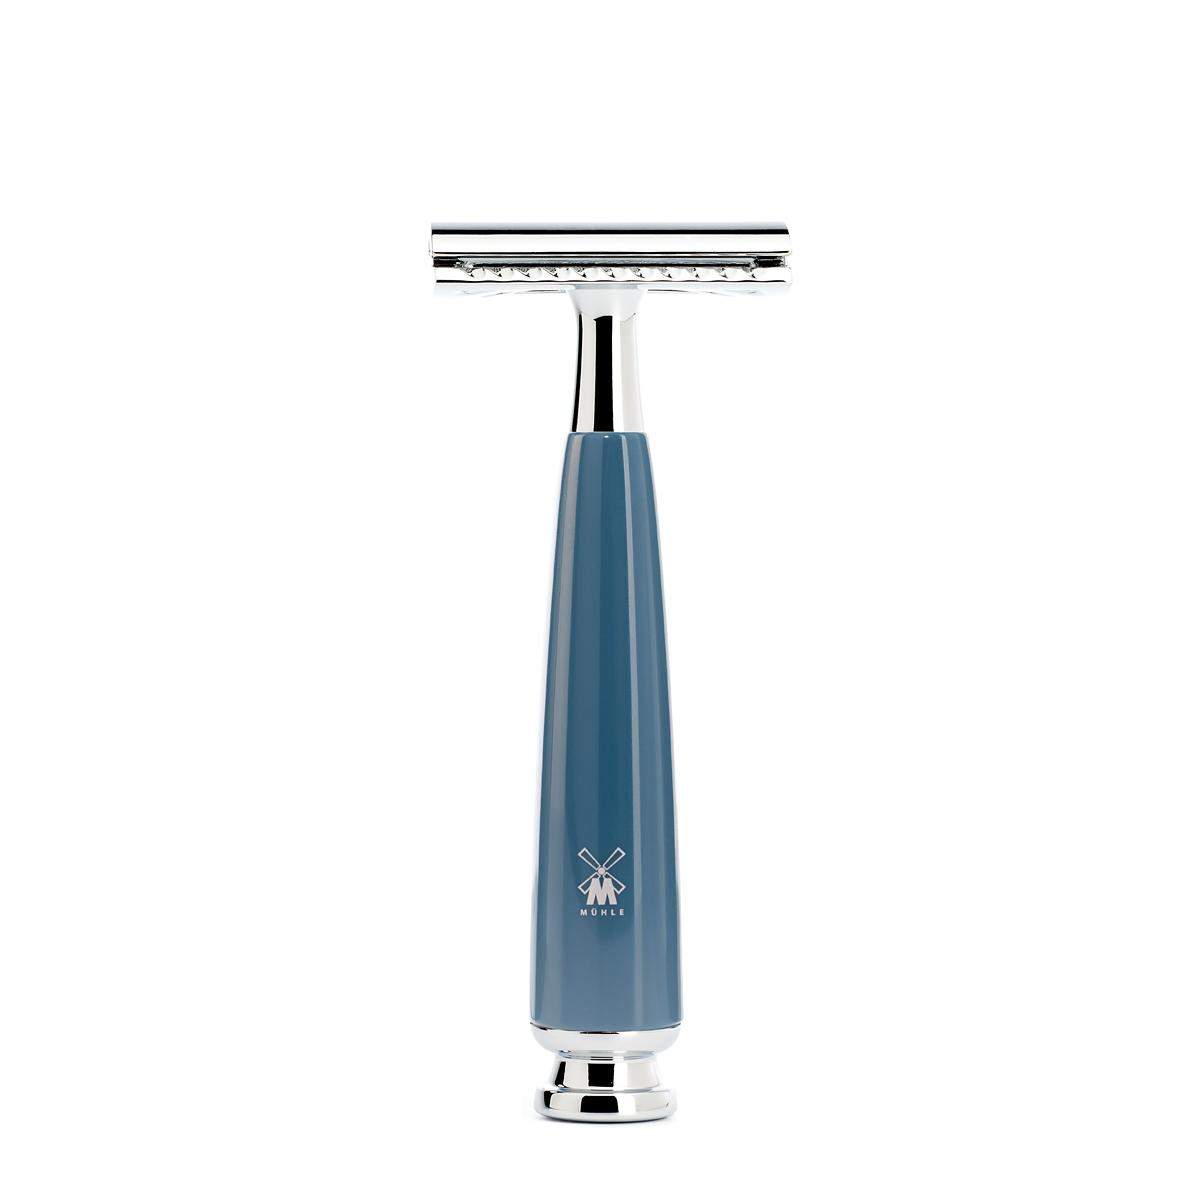 Mühle rytmo azul gasolina 4 unid. conjunto de barbear de texugo puro / aparelho de barbear